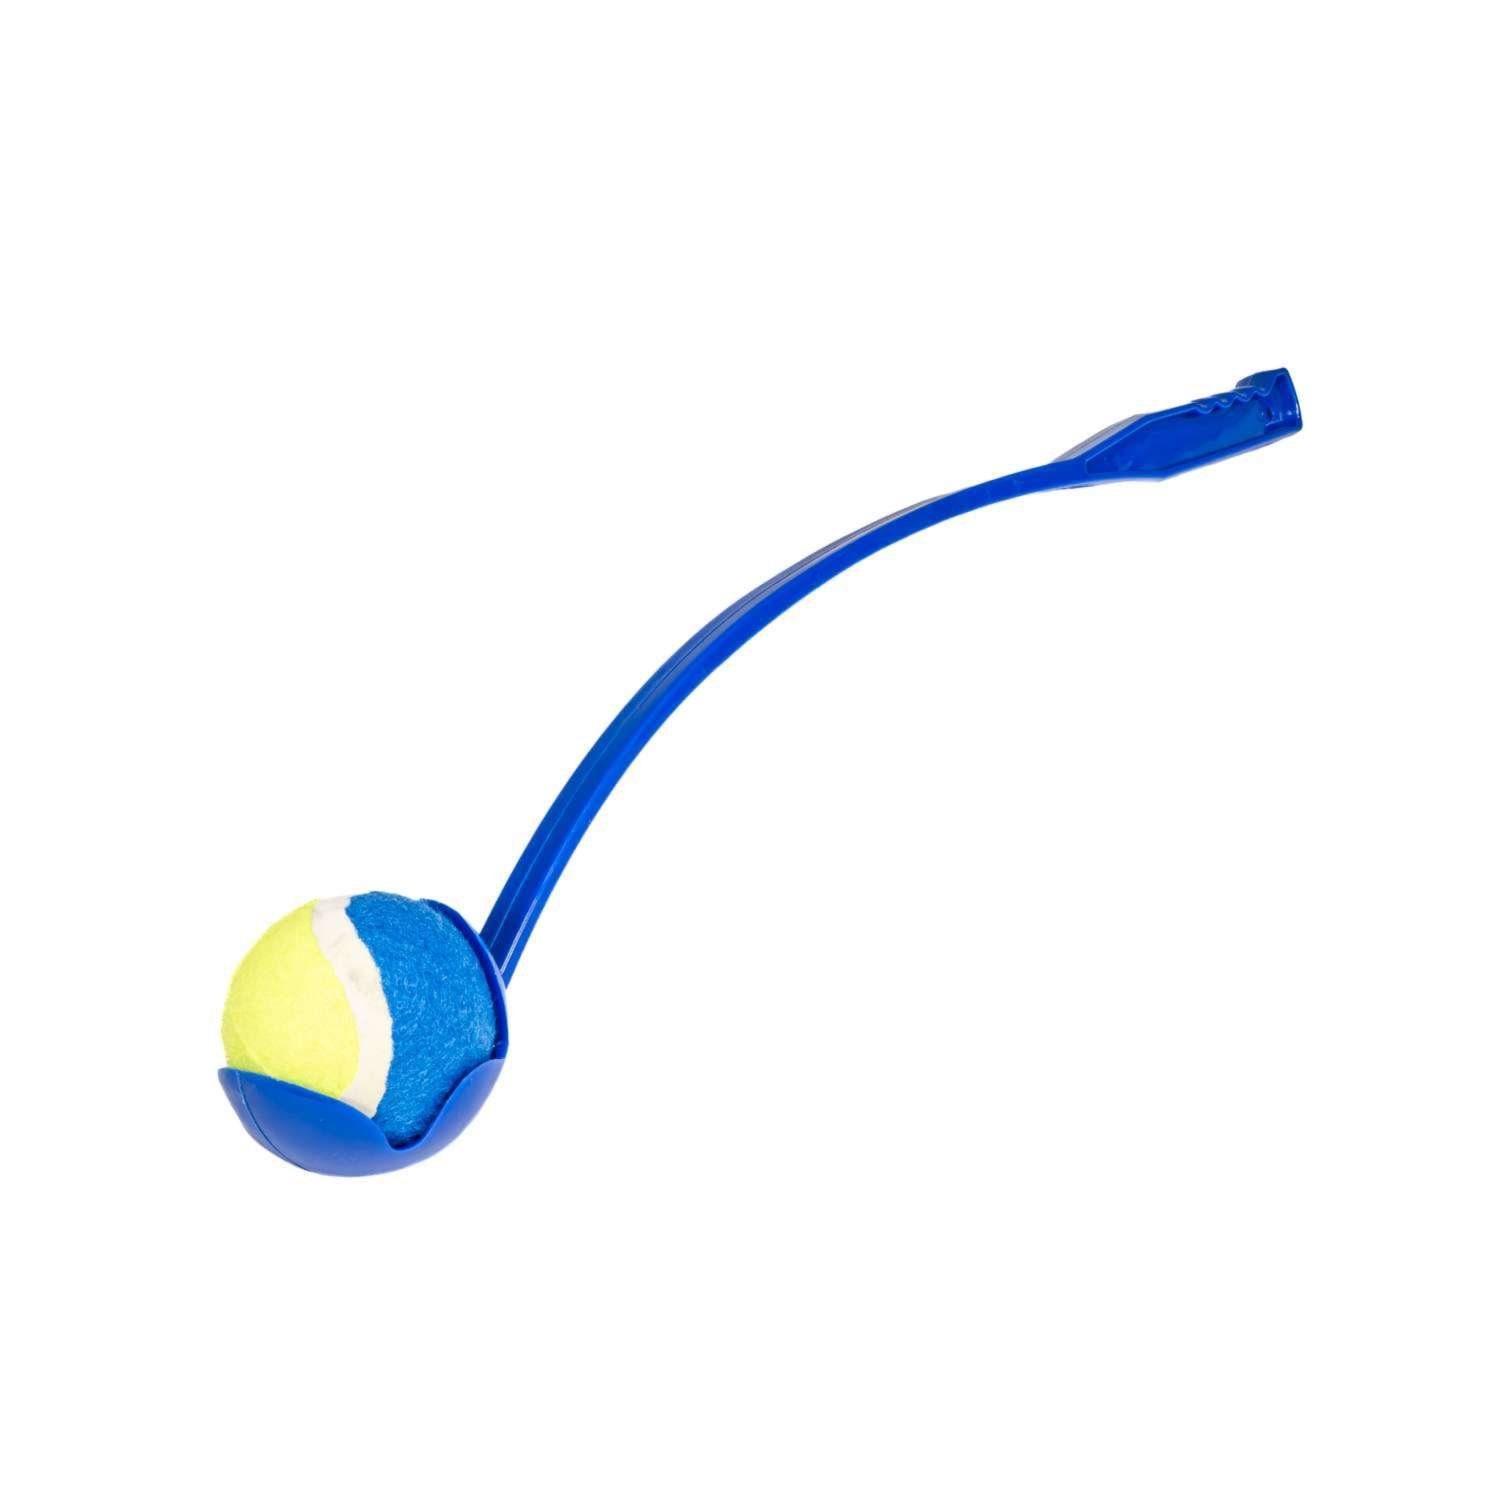 Intirilife Ballschleuder, 65 x 10 x 10 cm Größe - zum Aufheben und Werfen Blau